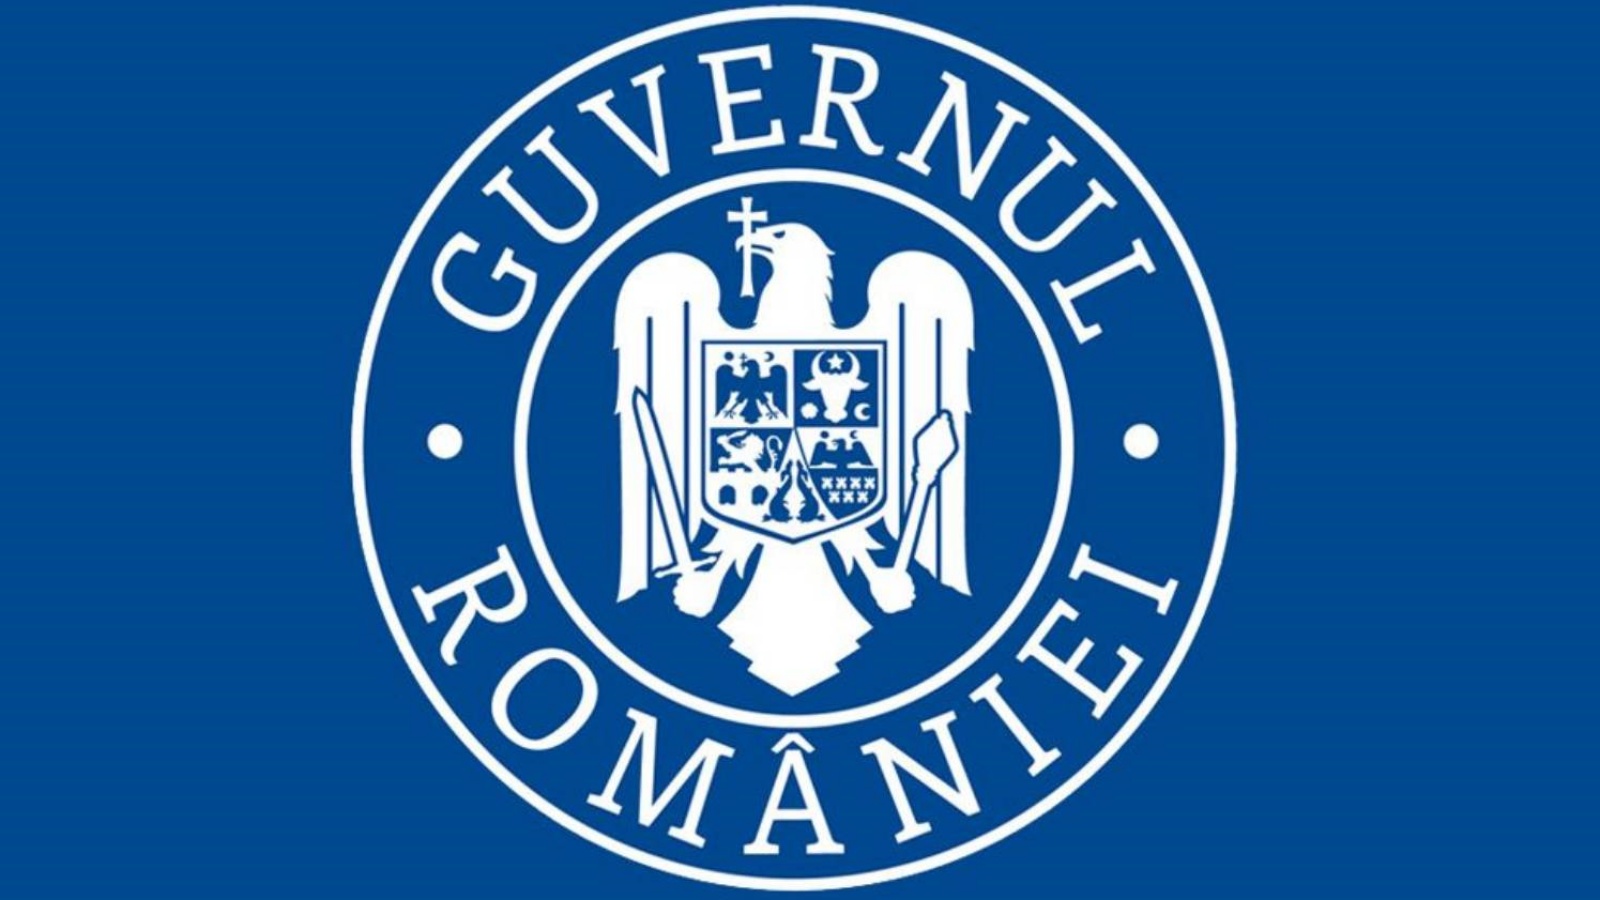 La Romania continua la crescita economica secondo il governo